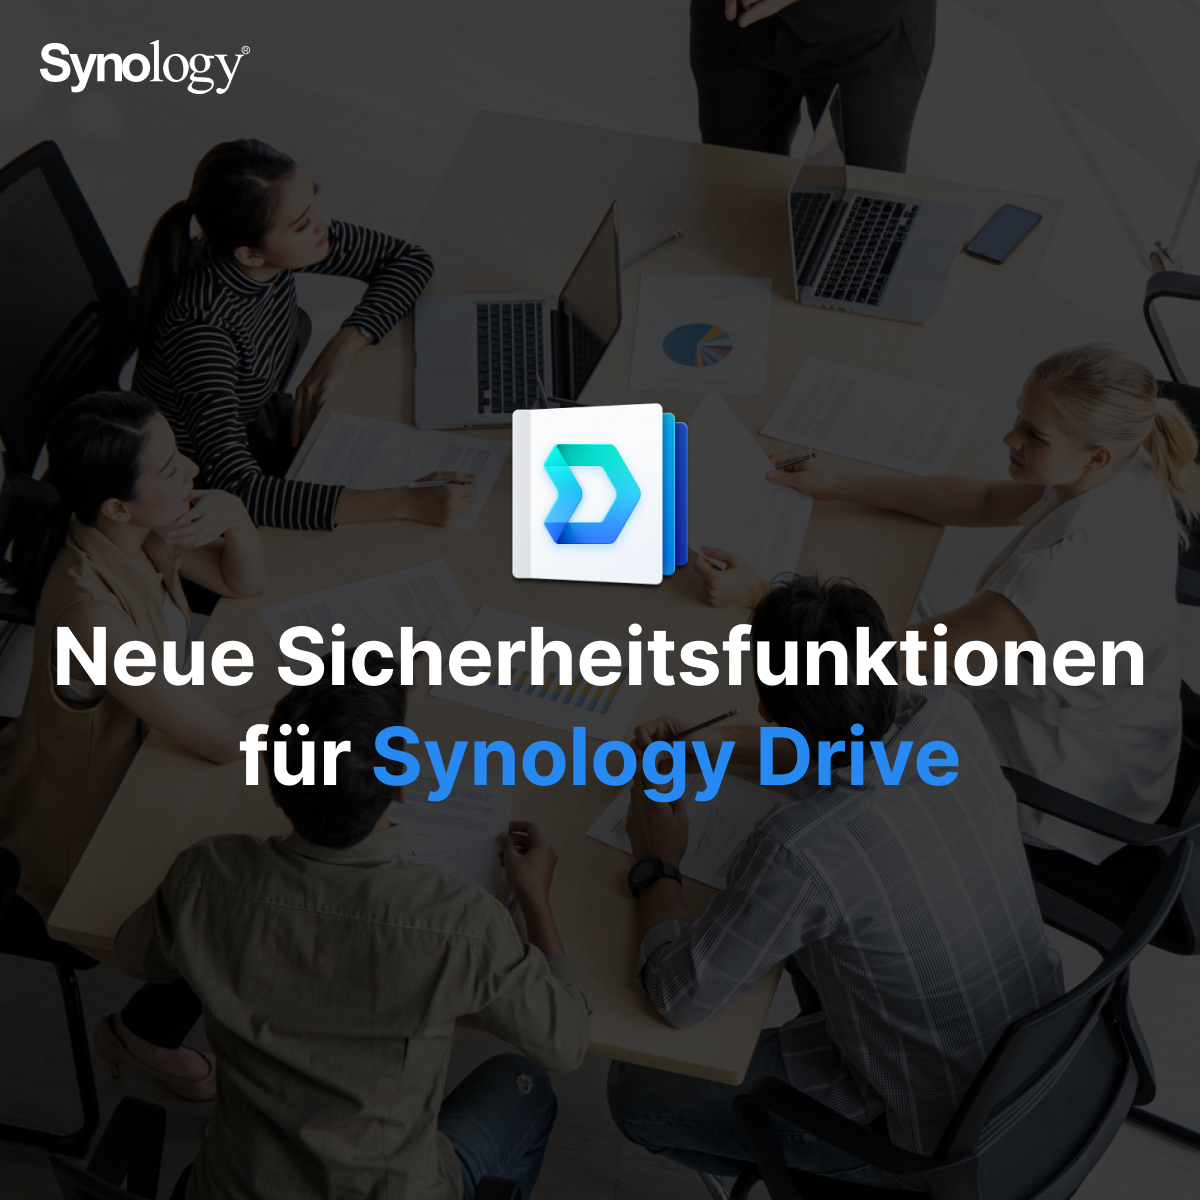 🆕 Das neueste Synology Drive Update bringt mehr Sicherheit für eure Daten! Mit Remote Wipe, Wasserzeichen, Download Blockierung und Videovorschau.

Details auf 👉 sy.to/ap6sx

#SynologyDrive #SichereDaten